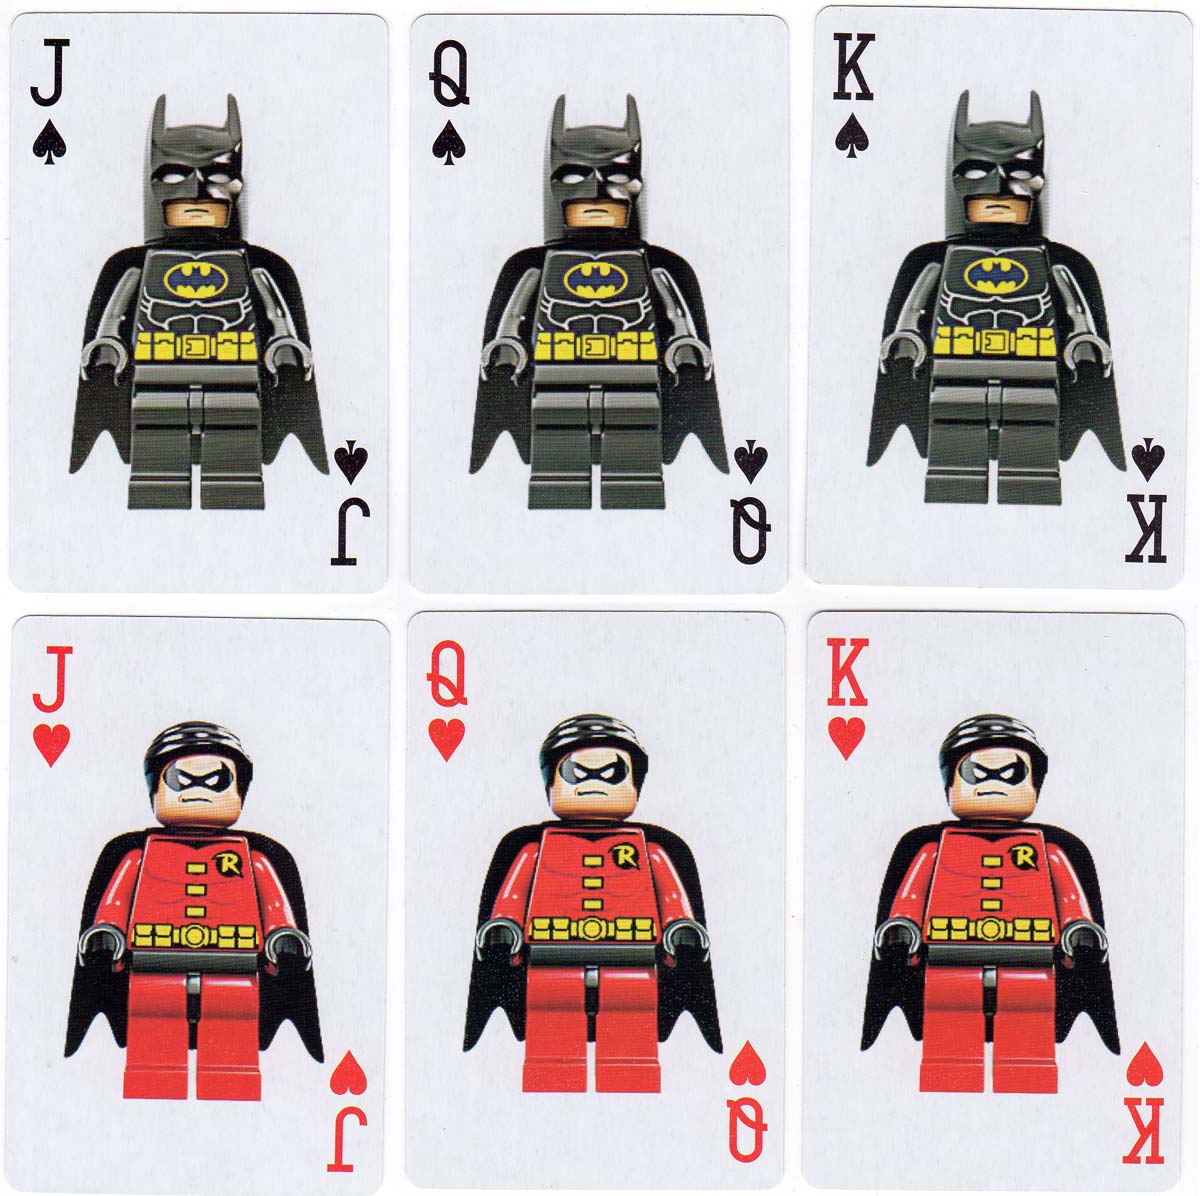 Lego Batman Movie playing cards, 2017